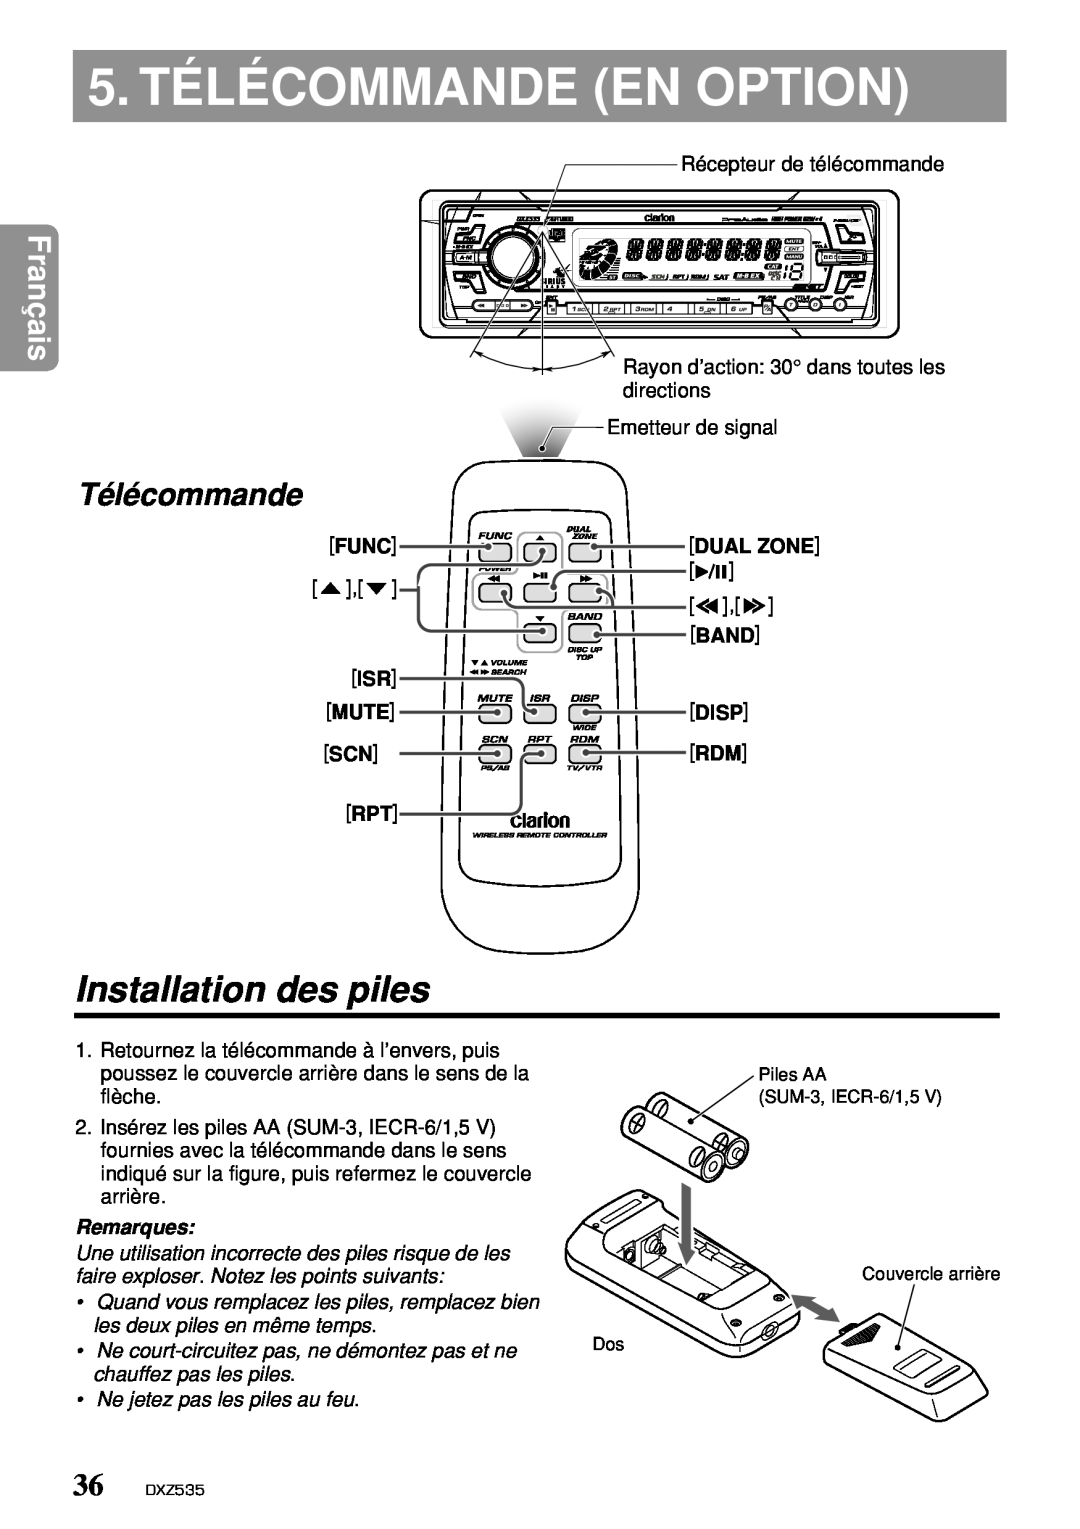 Clarion DXZ535 owner manual 5. TÉLÉCOMMANDE EN OPTION, Installation des piles, Télécommande, Français, Remarques 